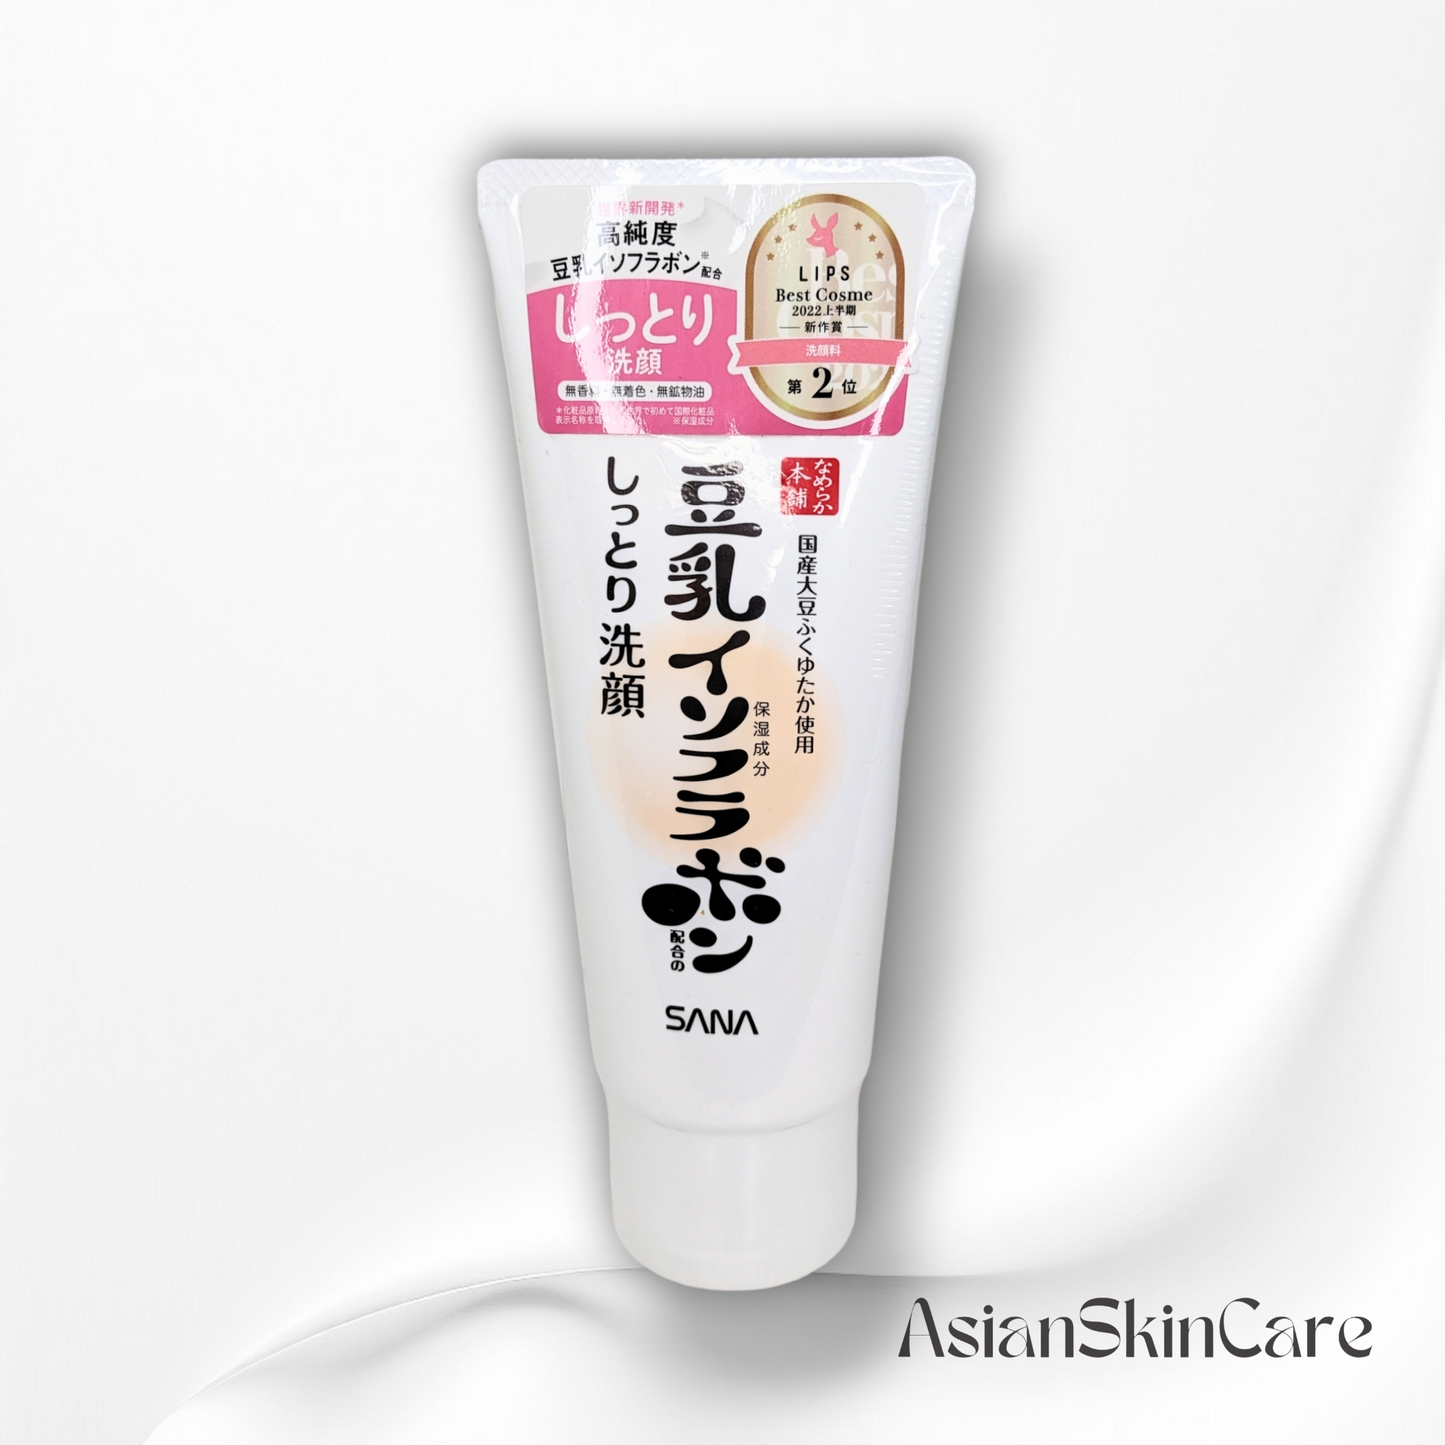 Nameraka Honpo Moisturizing Cleansing Face Wash - 150g : Un nettoyant visage doux pour une peau propre et équilibrée